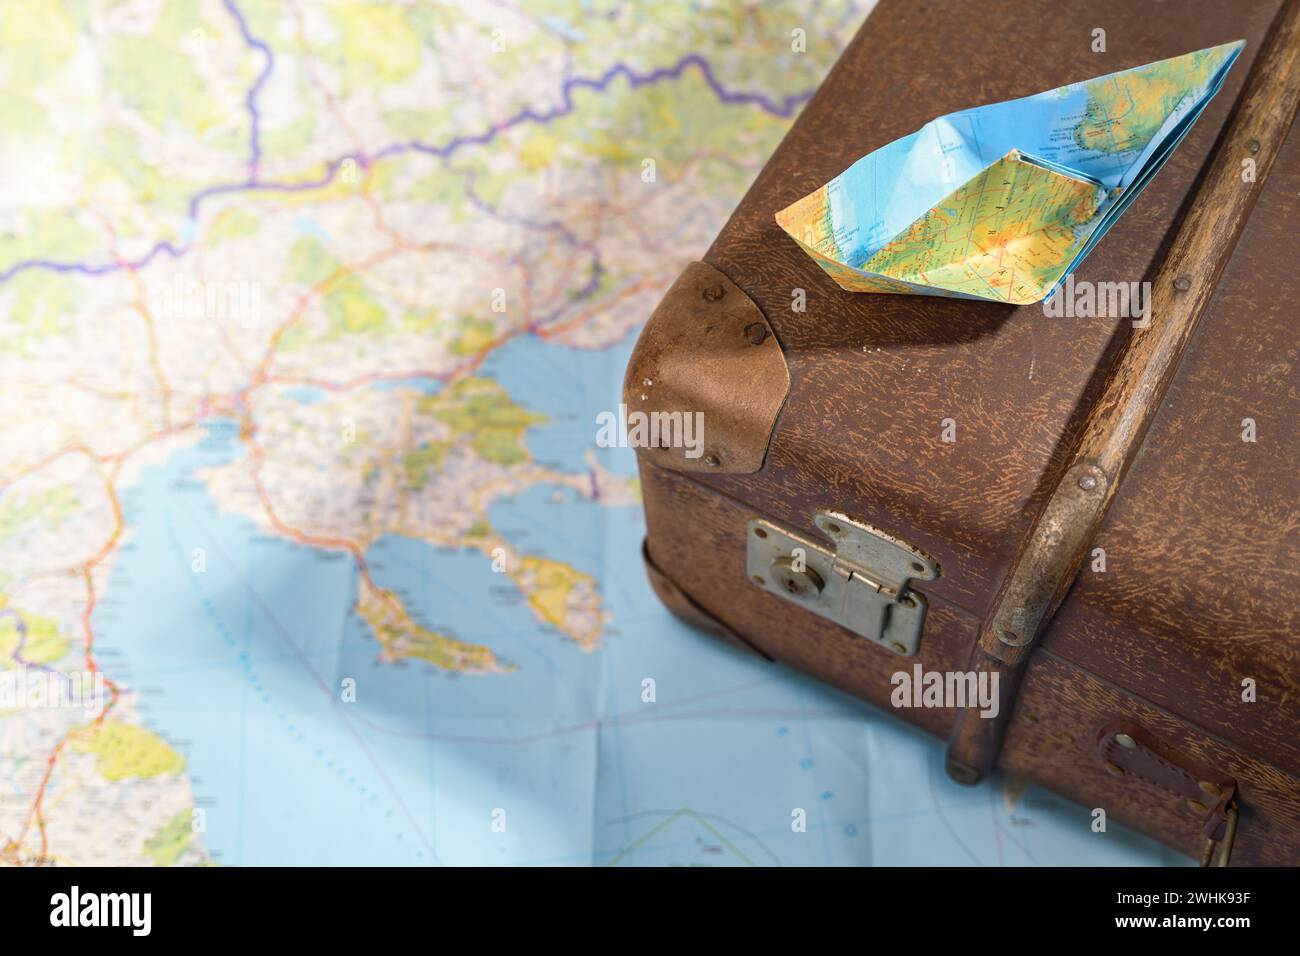 Gefaltetes Papierboot auf einem alten, alten Koffer auf einer Karte, Reise, Fernweh und Kreuzfahrtkonzept, Kopierraum, ausgewählter Fokus Stockfoto